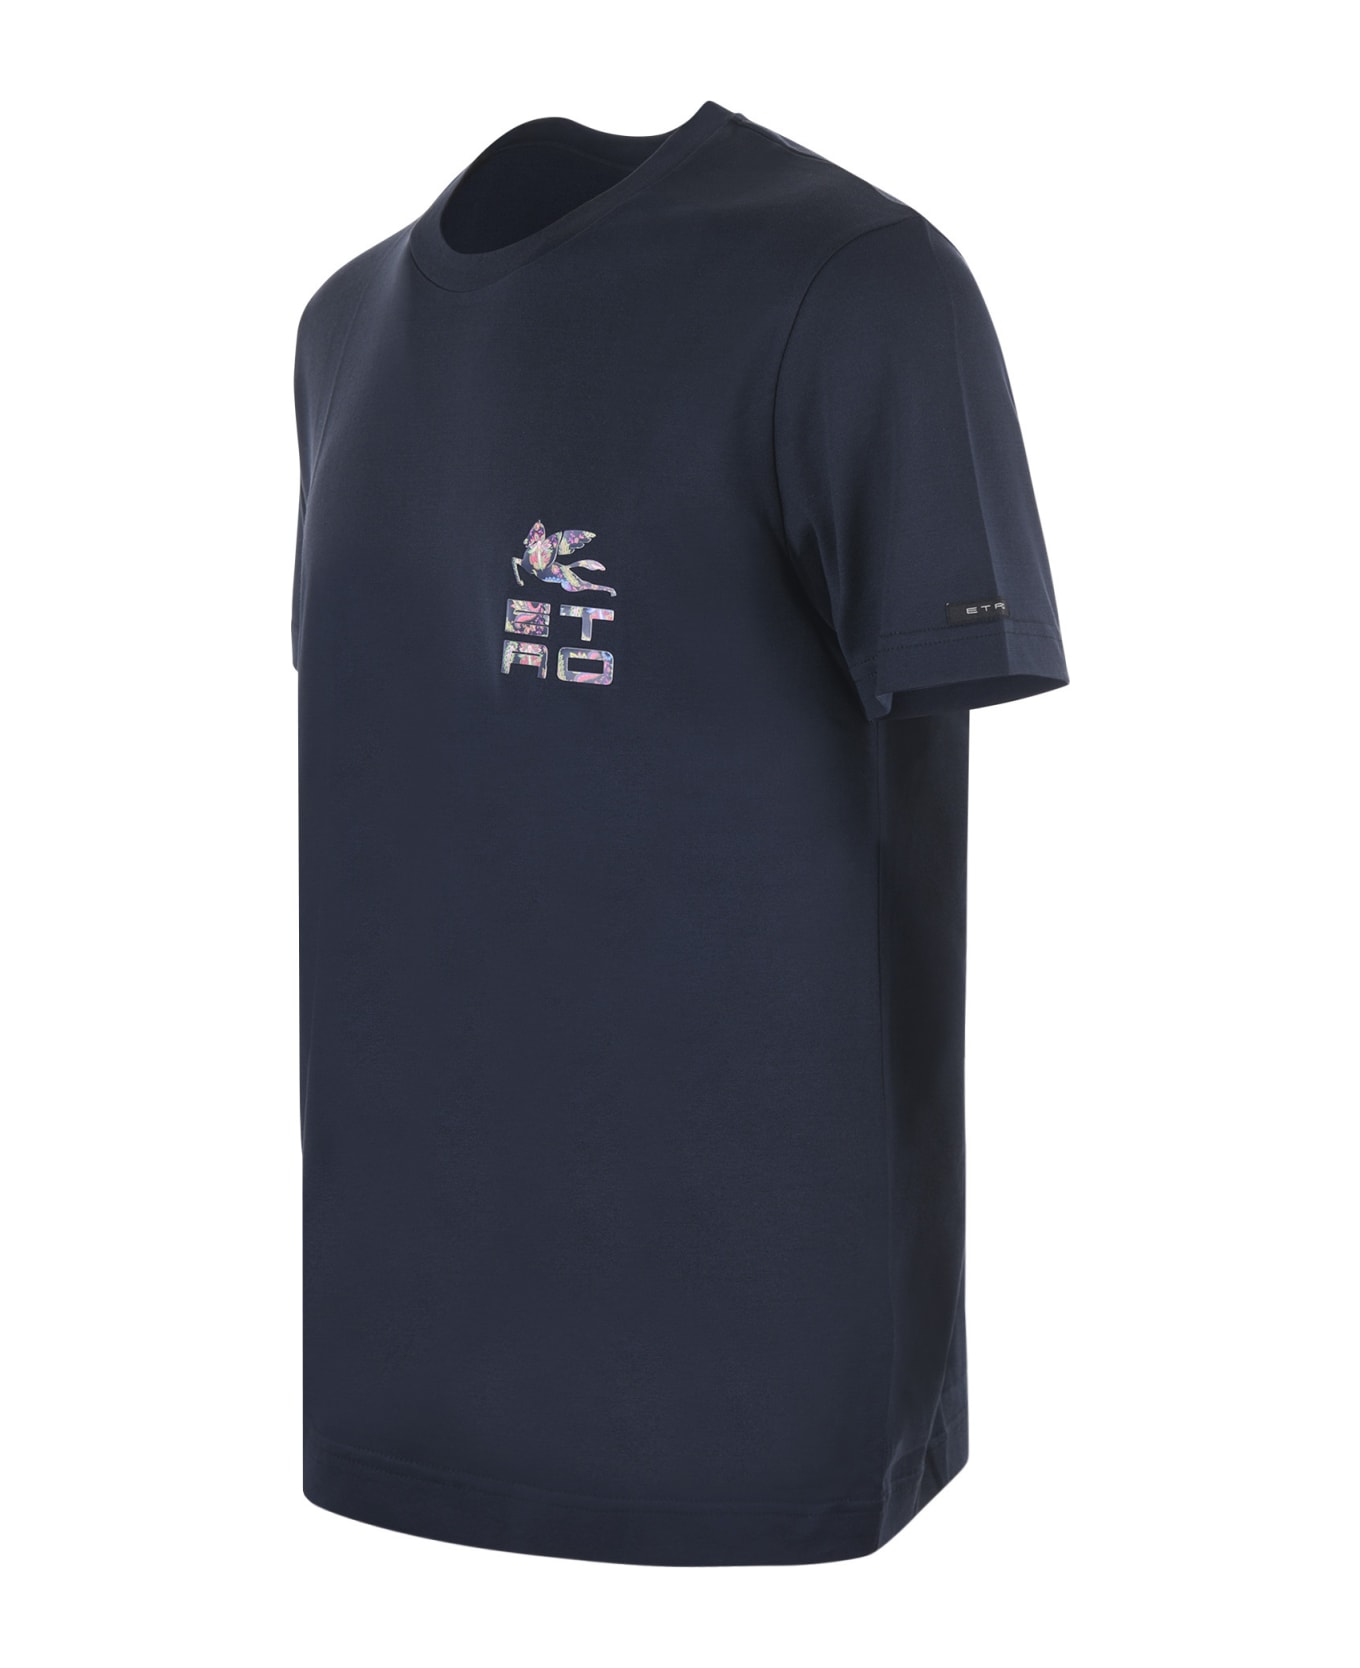 Etro T-shirt Etro In Cotone Disponibile Store Scafati - Blu scuro シャツ